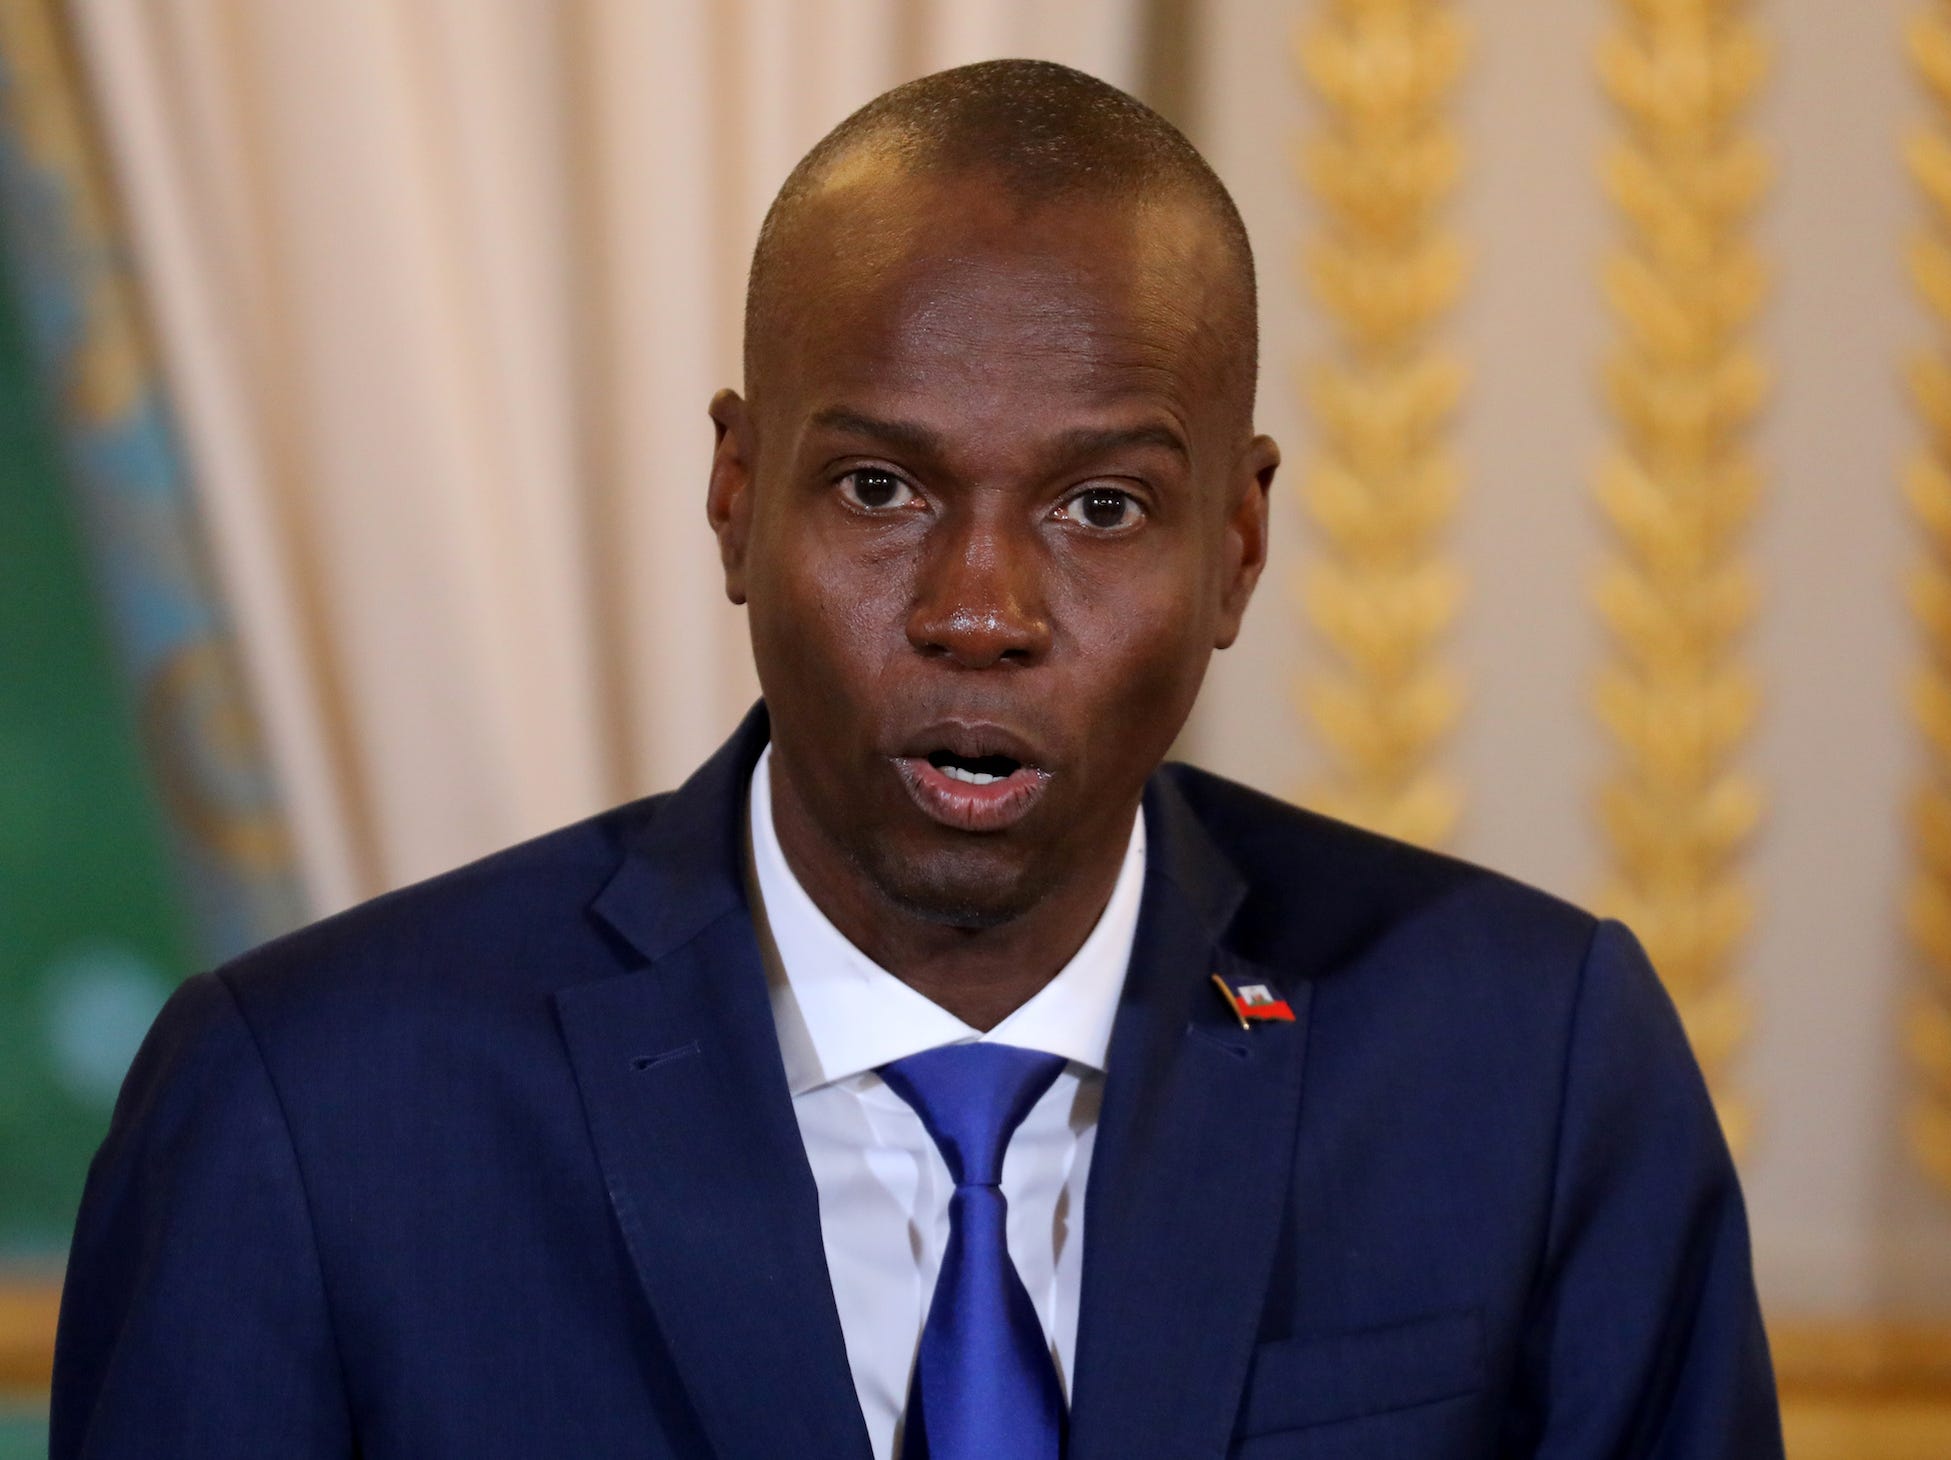 Haitian president jovenel moise